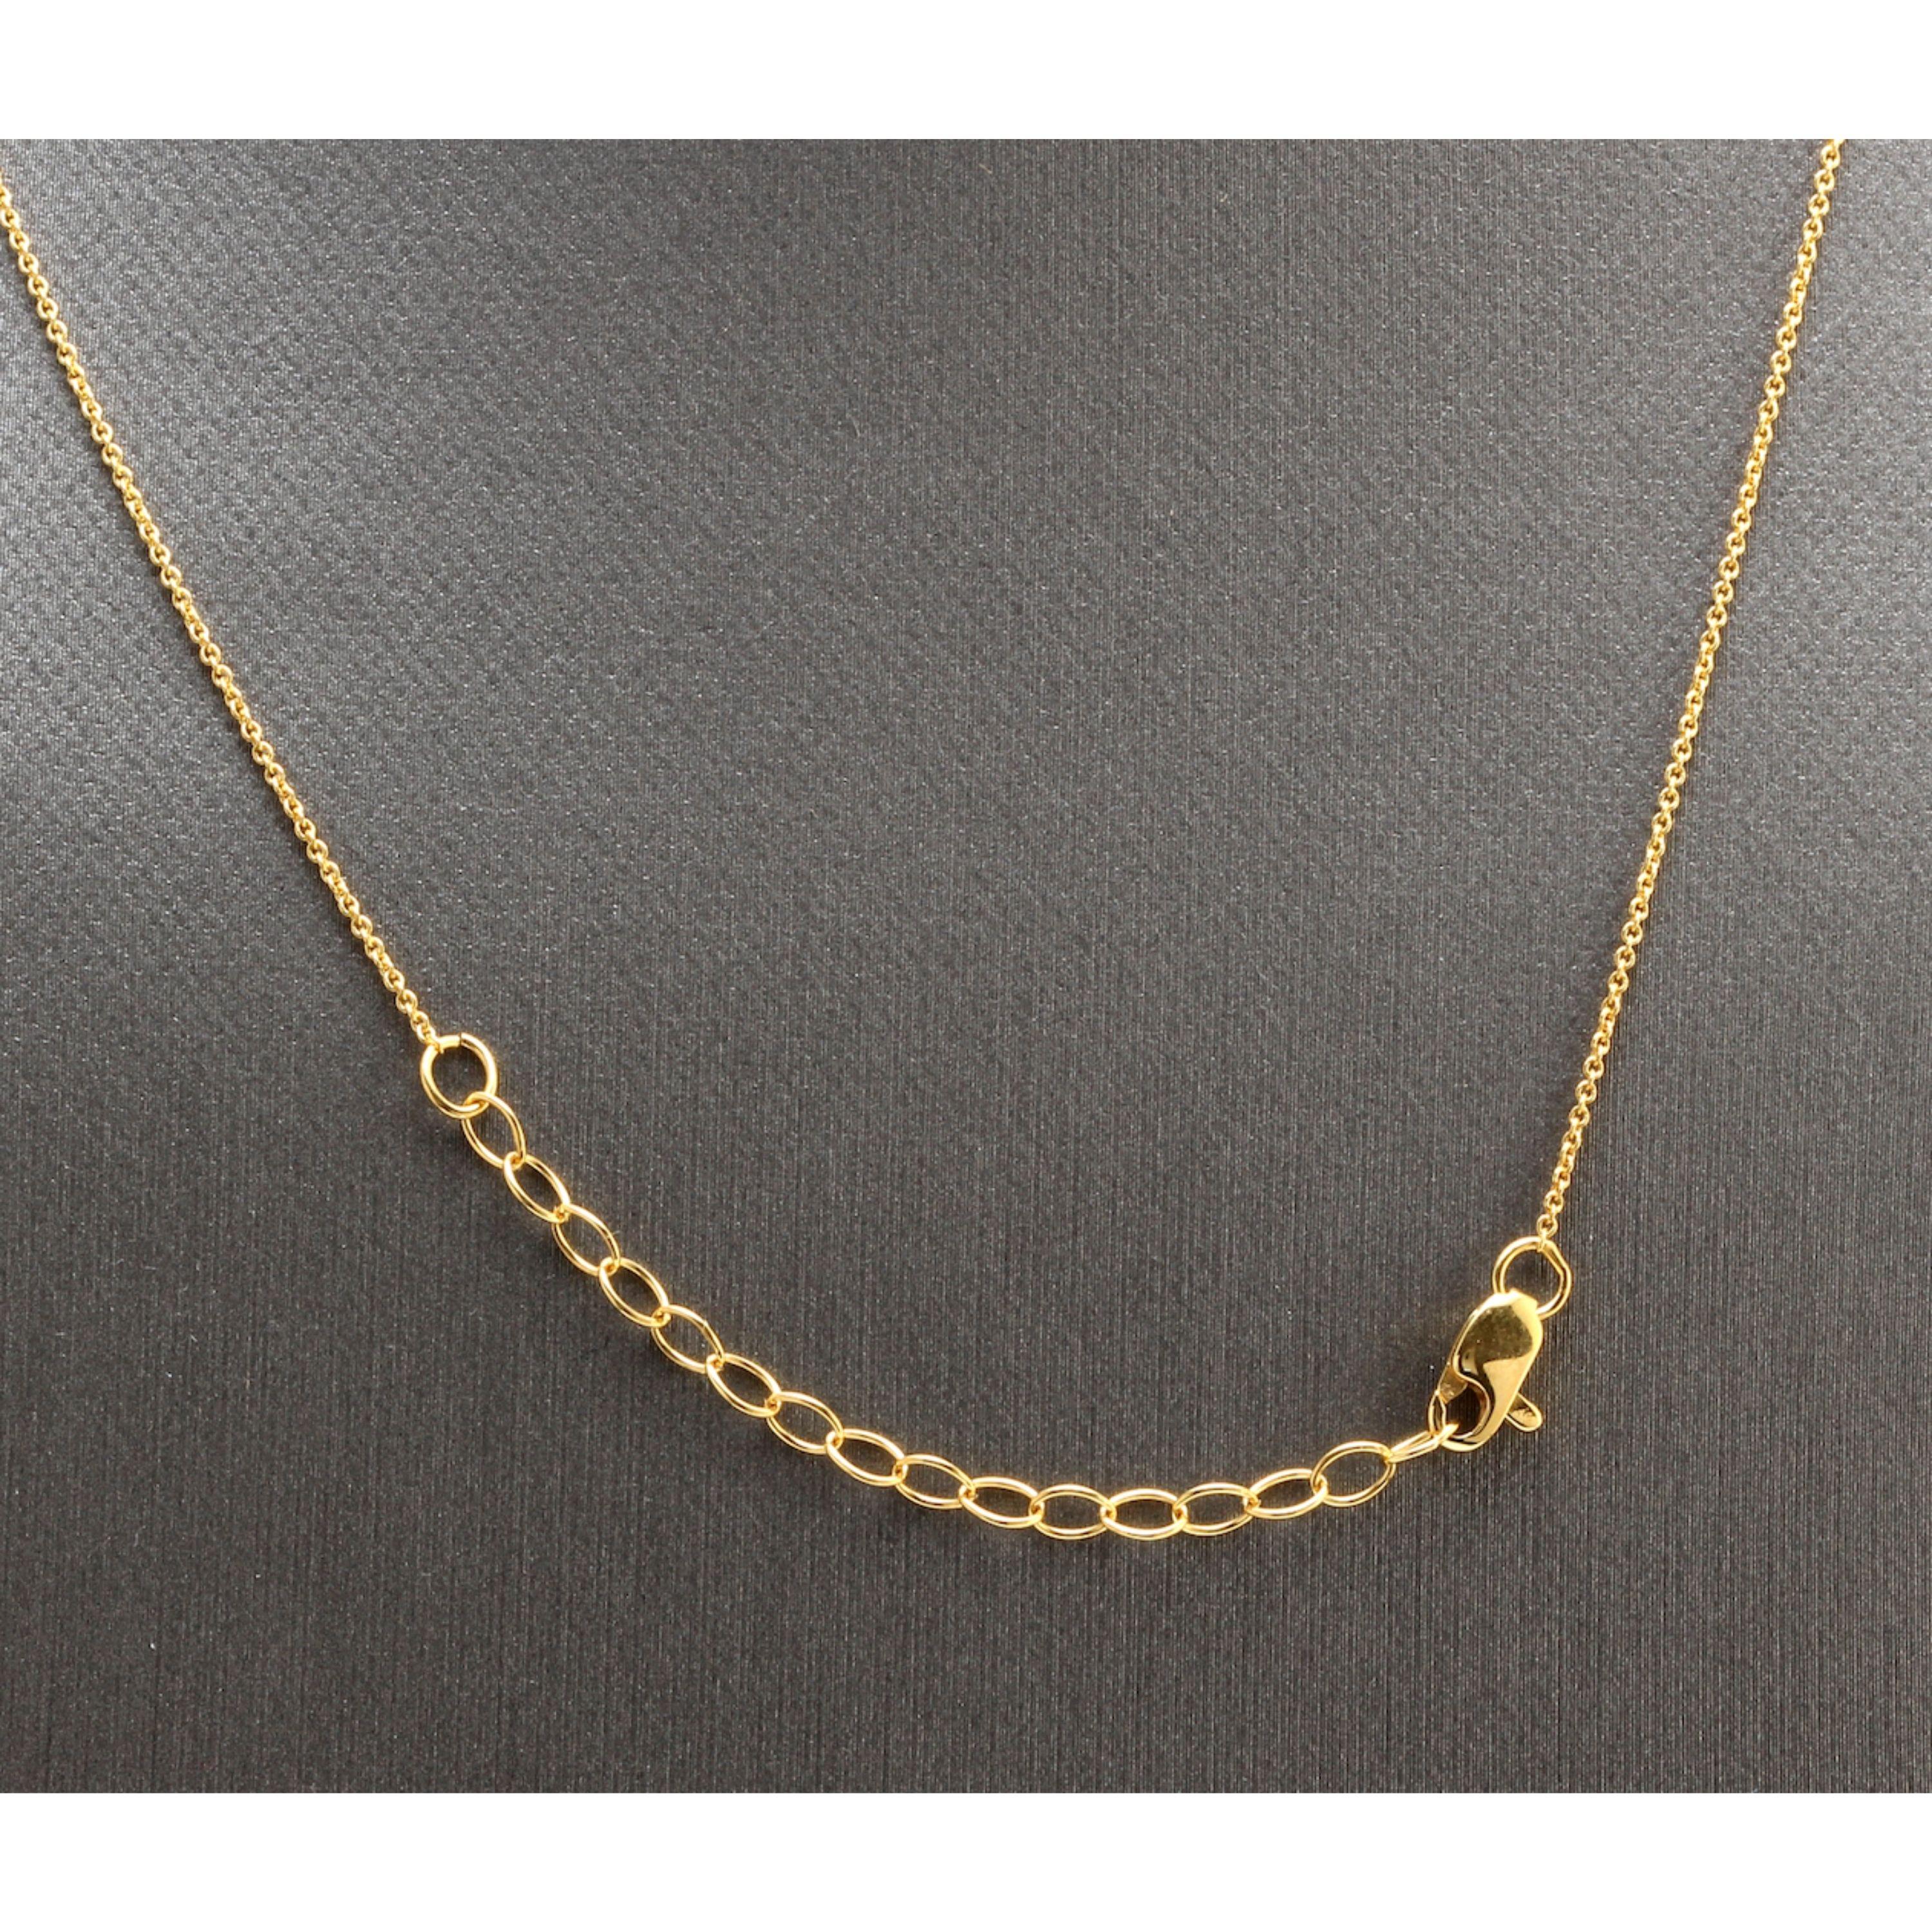 Splendid 14k massivem Gelbgold Infinity Halskette mit natürlichen Diamanten Akzent und rohen Smaragden

Erstaunlich schönes Stück!

Gestempelt: 14k

Gewicht des natürlichen Diamanten: 0,005ct (H / SI2)

Natürliche Rohsmaragde

Kette Länge ist: